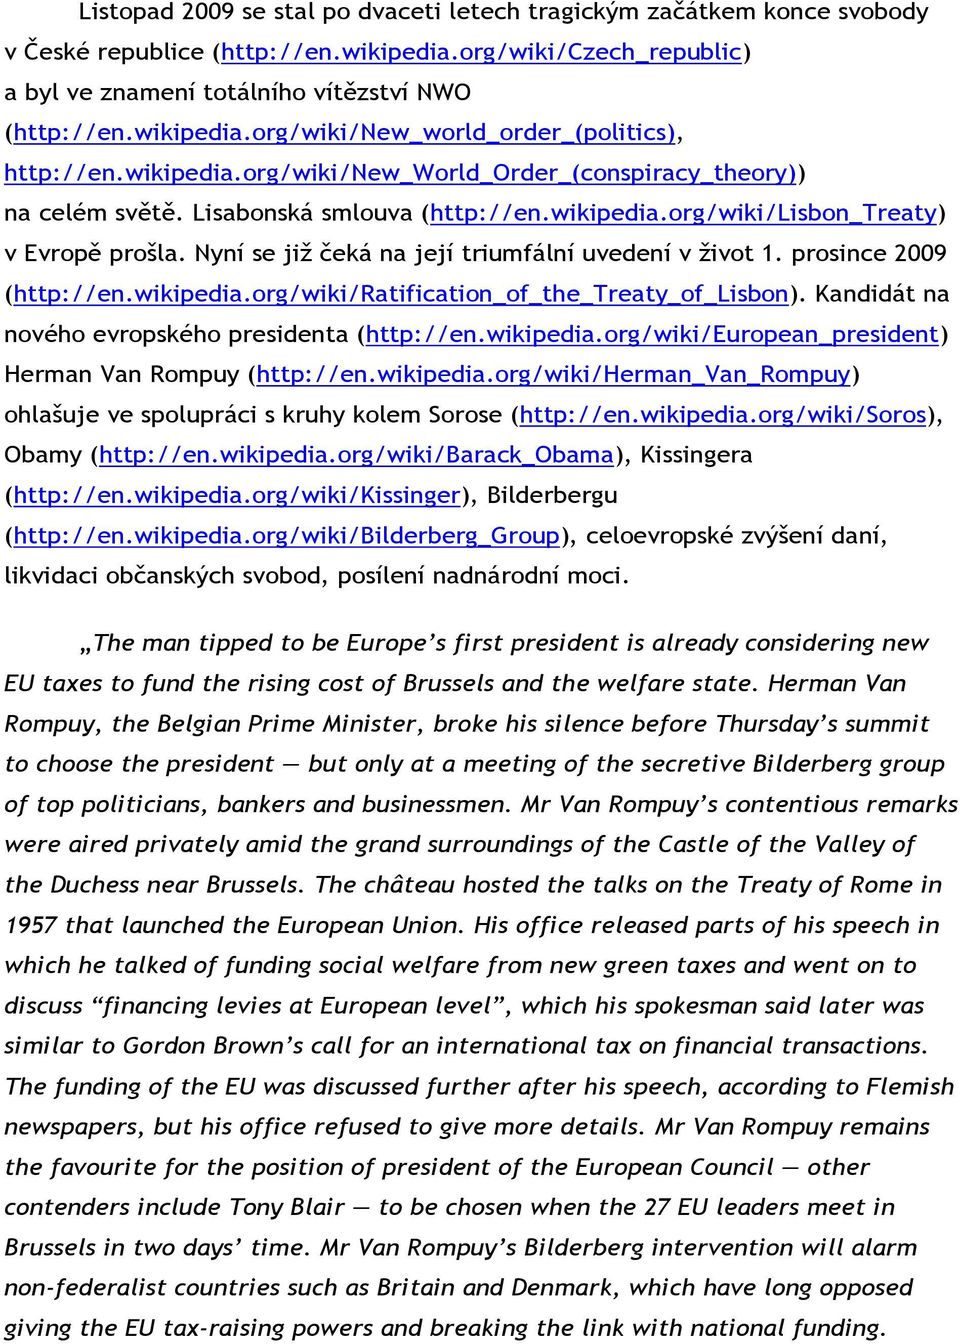 Nyní se již čeká na její triumfální uvedení v život 1. prosince 2009 (http://en.wikipedia.org/wiki/ratification_of_the_treaty_of_lisbon). Kandidát na nového evropského presidenta (http://en.wikipedia.org/wiki/european_president) Herman Van Rompuy (http://en.